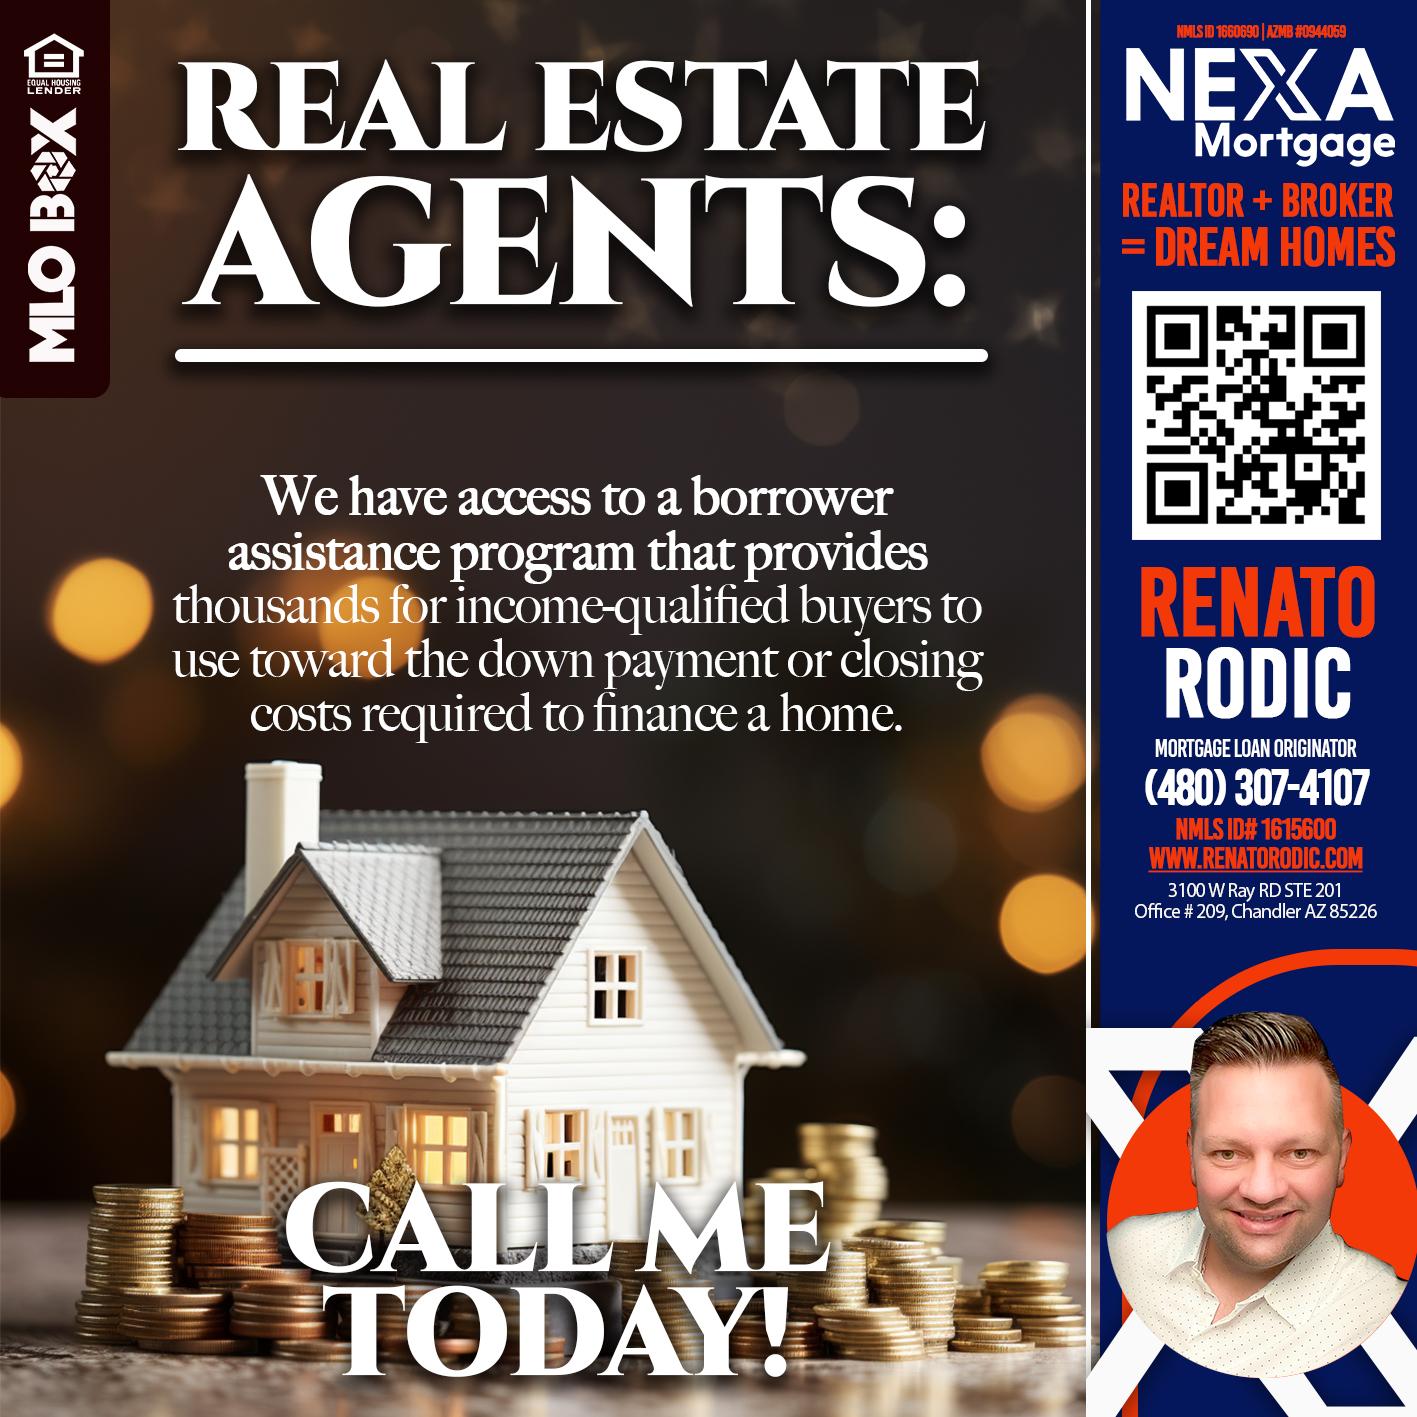 real estate agent - Renato Rodic -Mortgage Loan Originator